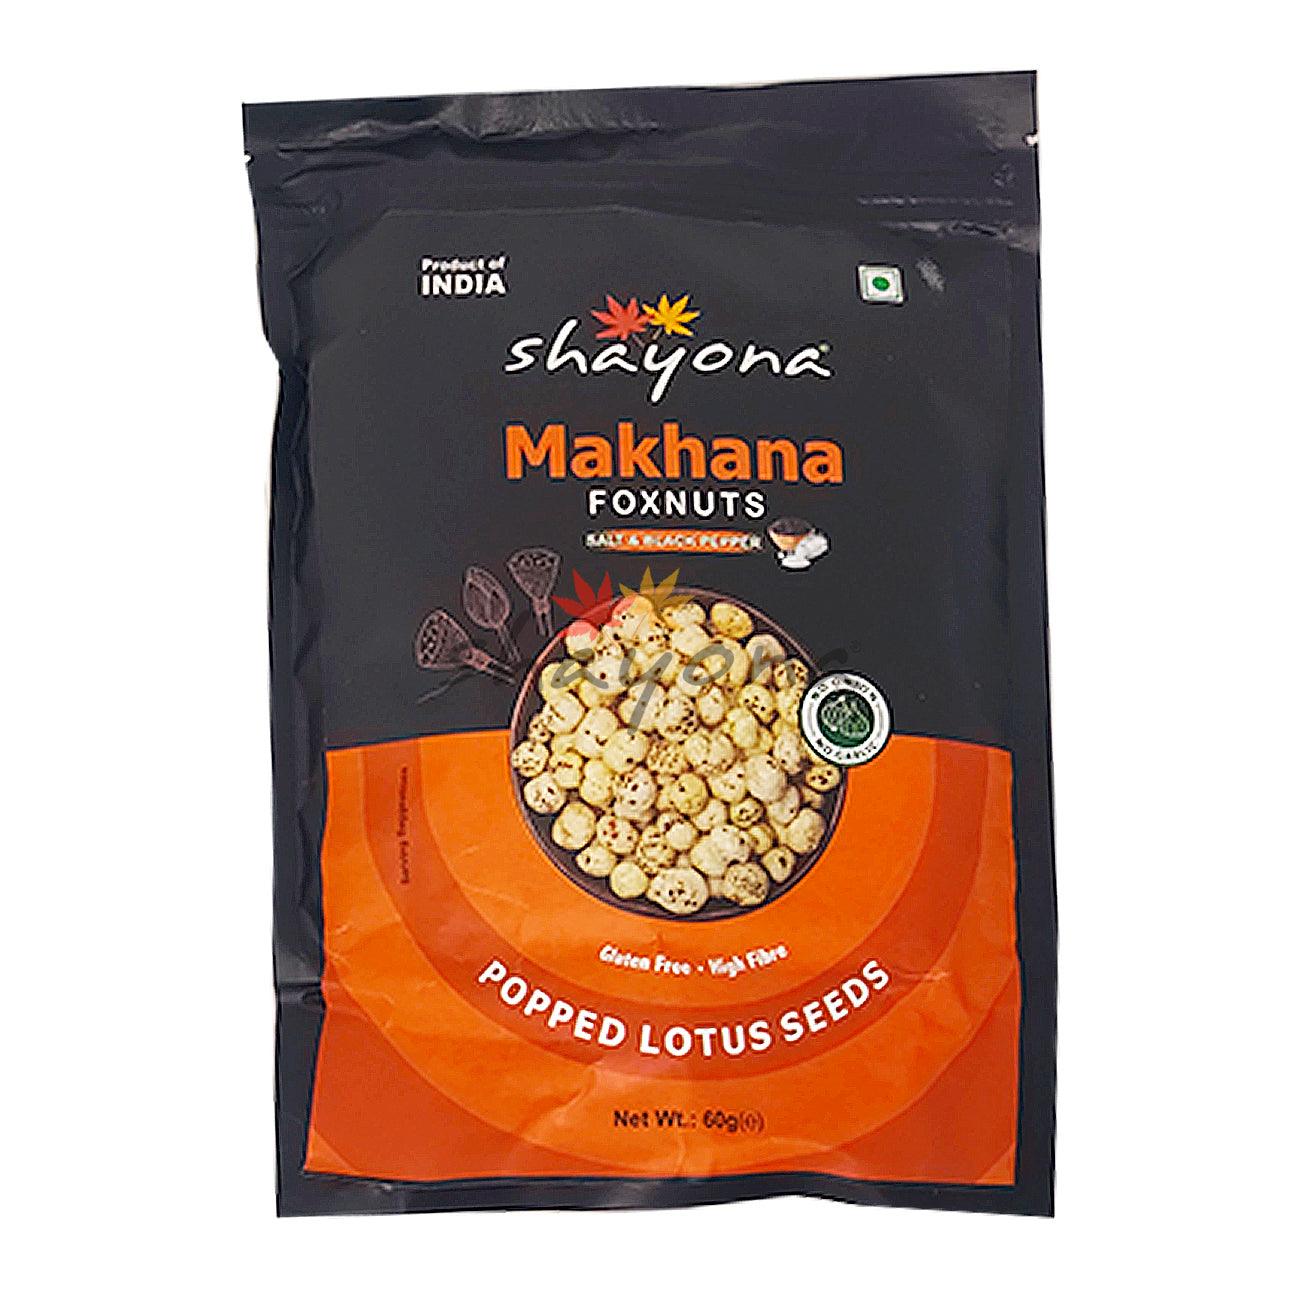 Shayona Makhana Foxnuts - Salt & Black Pepper - Shayona UK